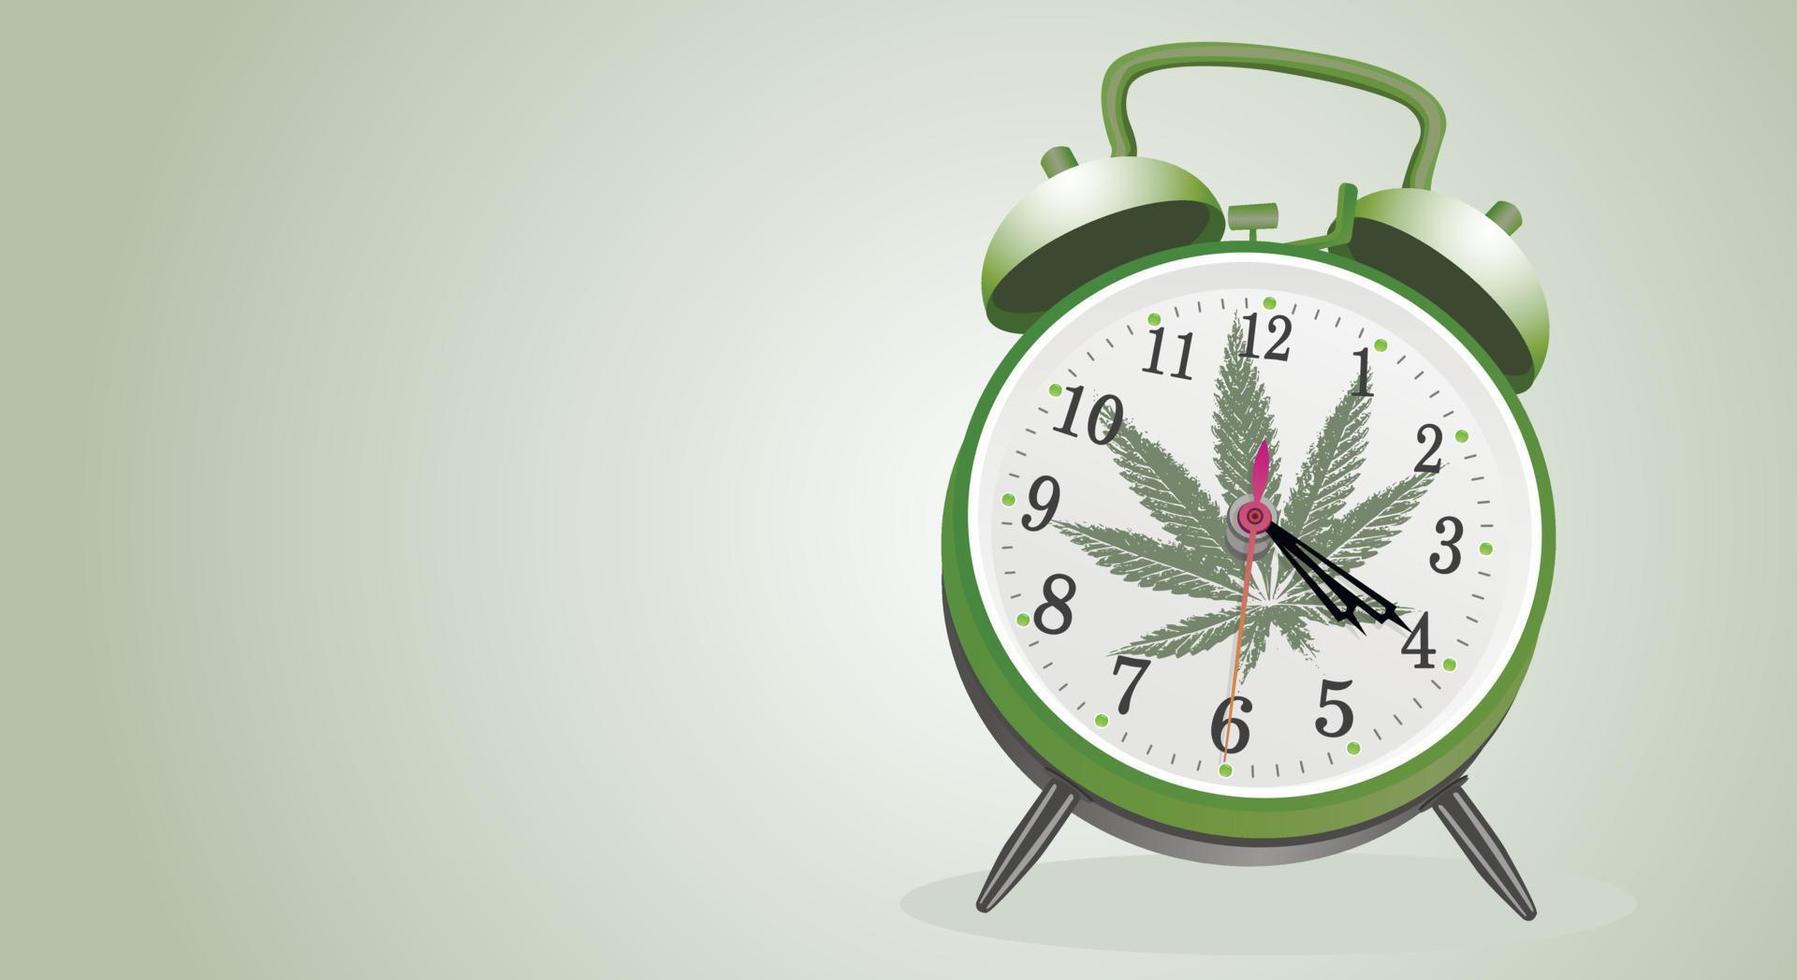 marijuanablad, medicinsk cannabis på en klassisk väckarklocka med visare som visar tiden 4 timmar 20 minuter. cannabis på nätet. klassisk bakgrund. kopieringsutrymme. vektor illustration